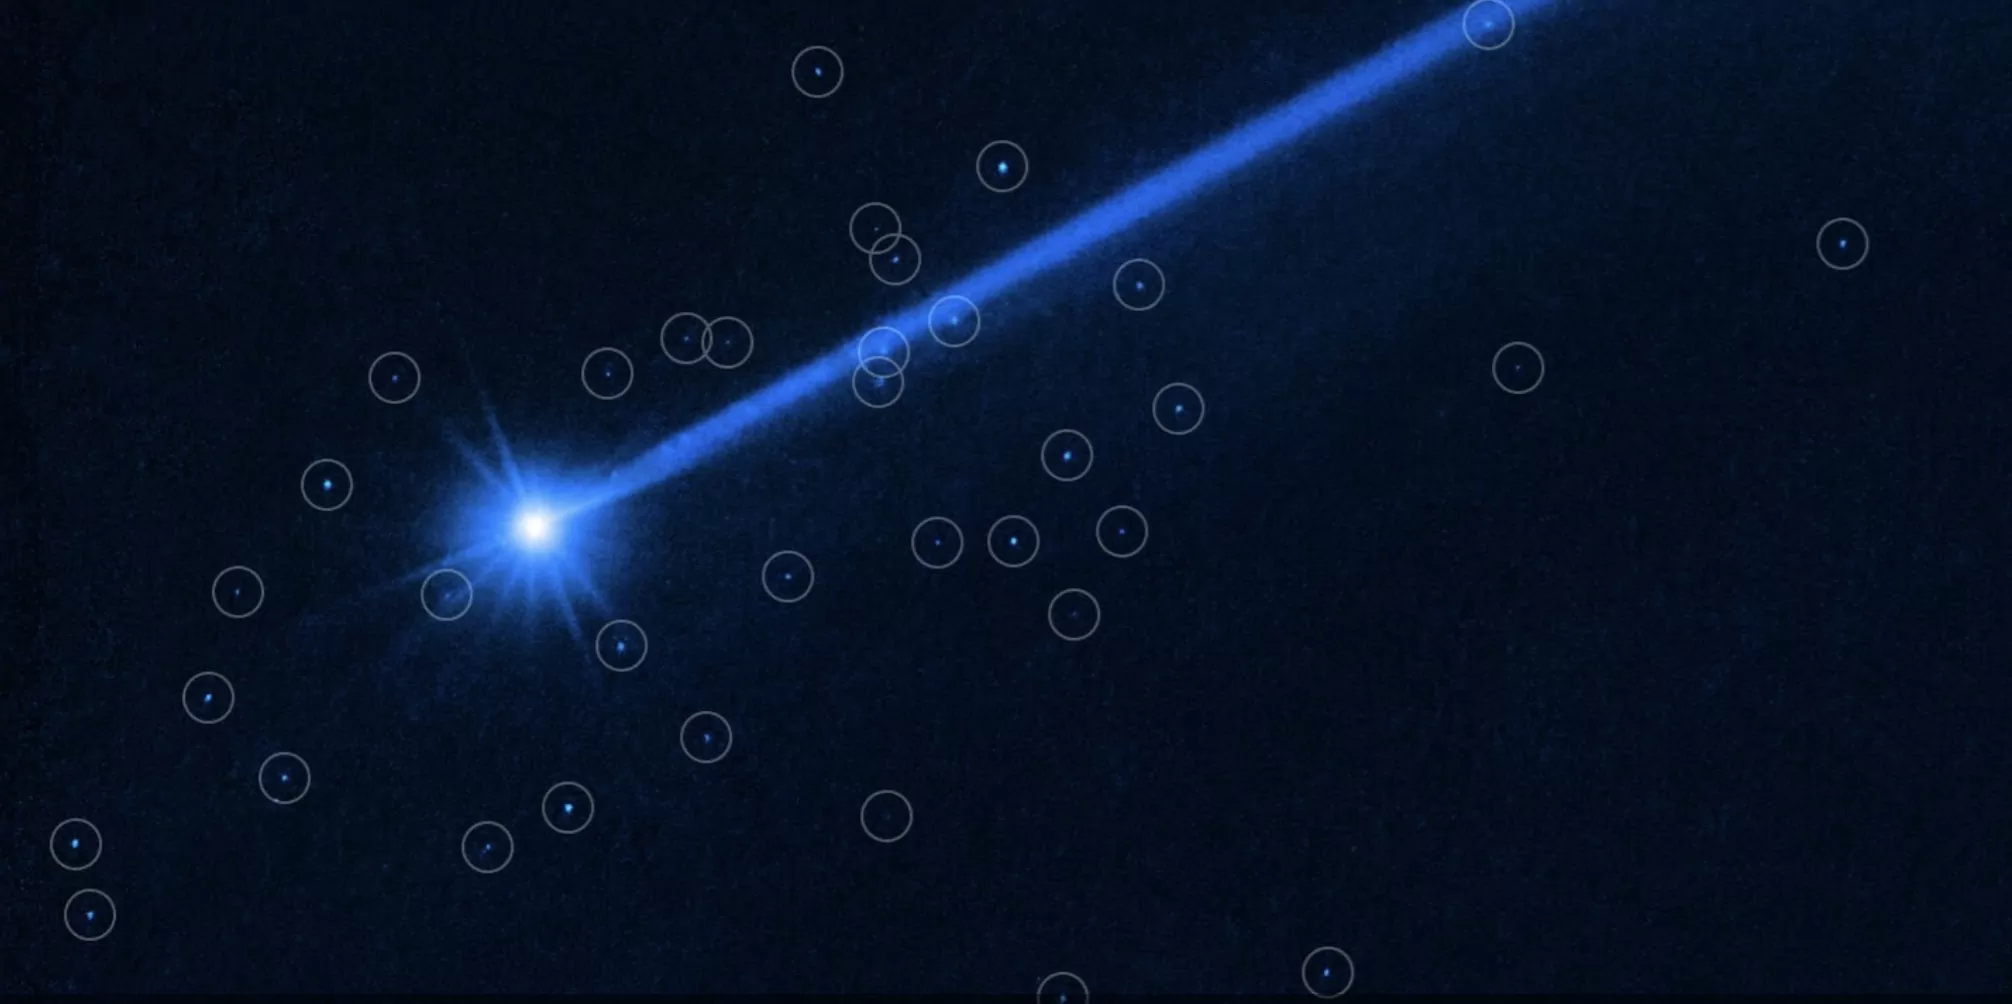 Evo što je Hubble vidio kad je usmjerio pogled prema asteroidu Dimorphos